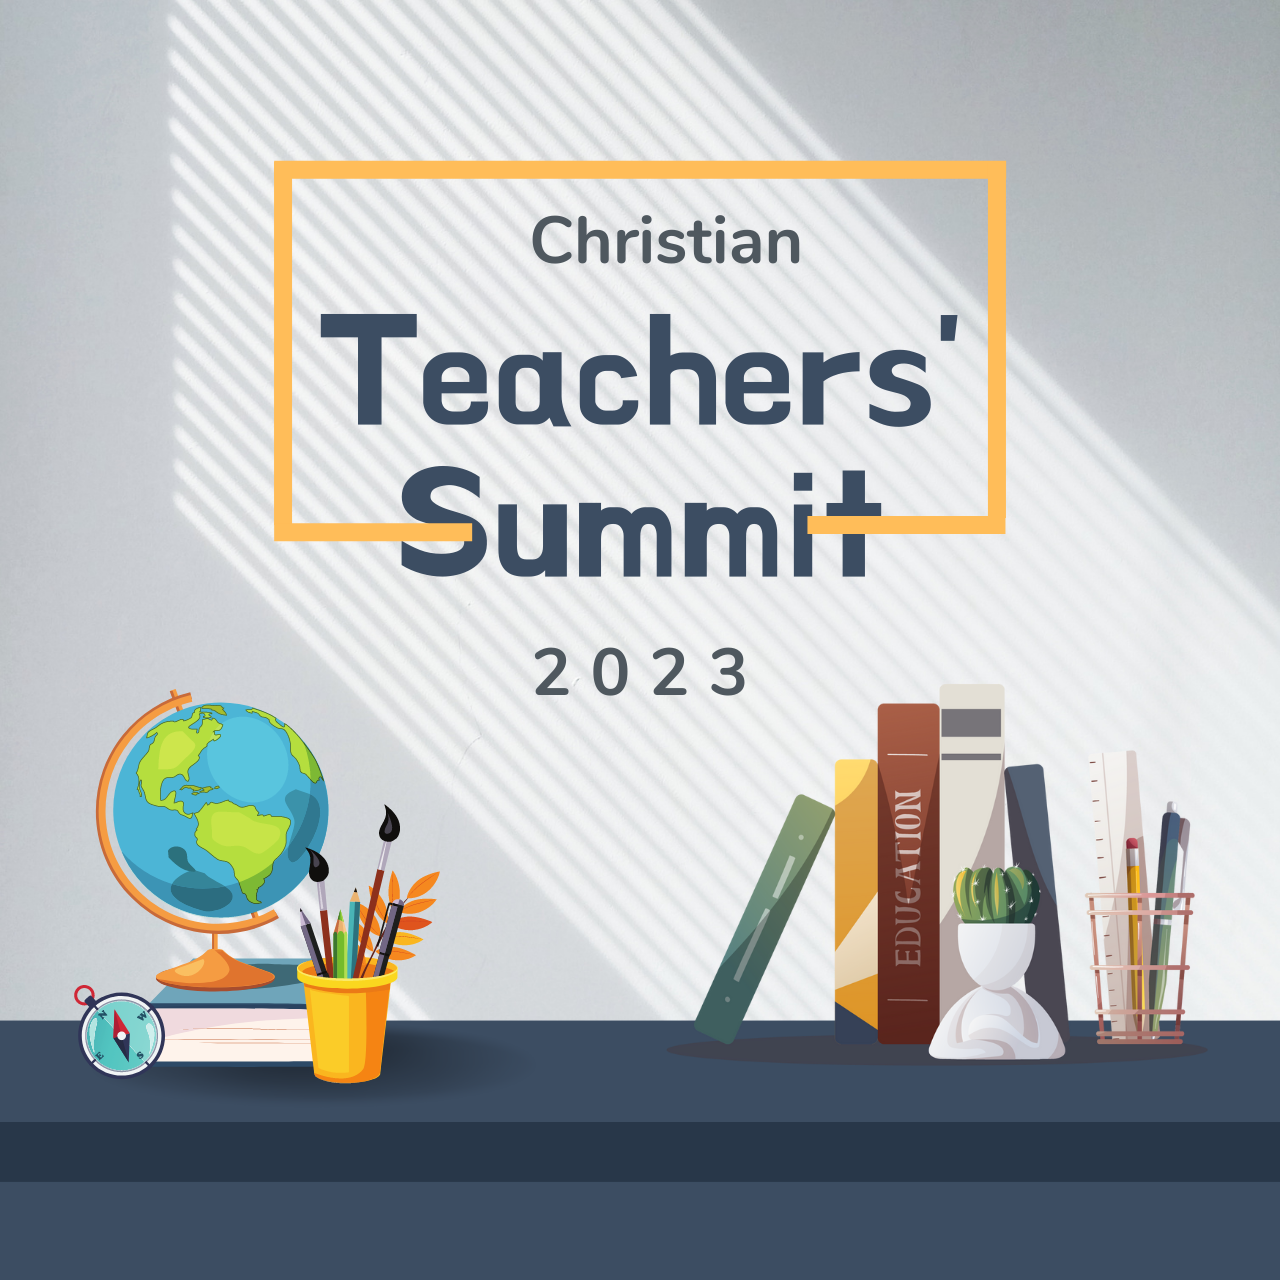 Christian Teachers Summit 2023